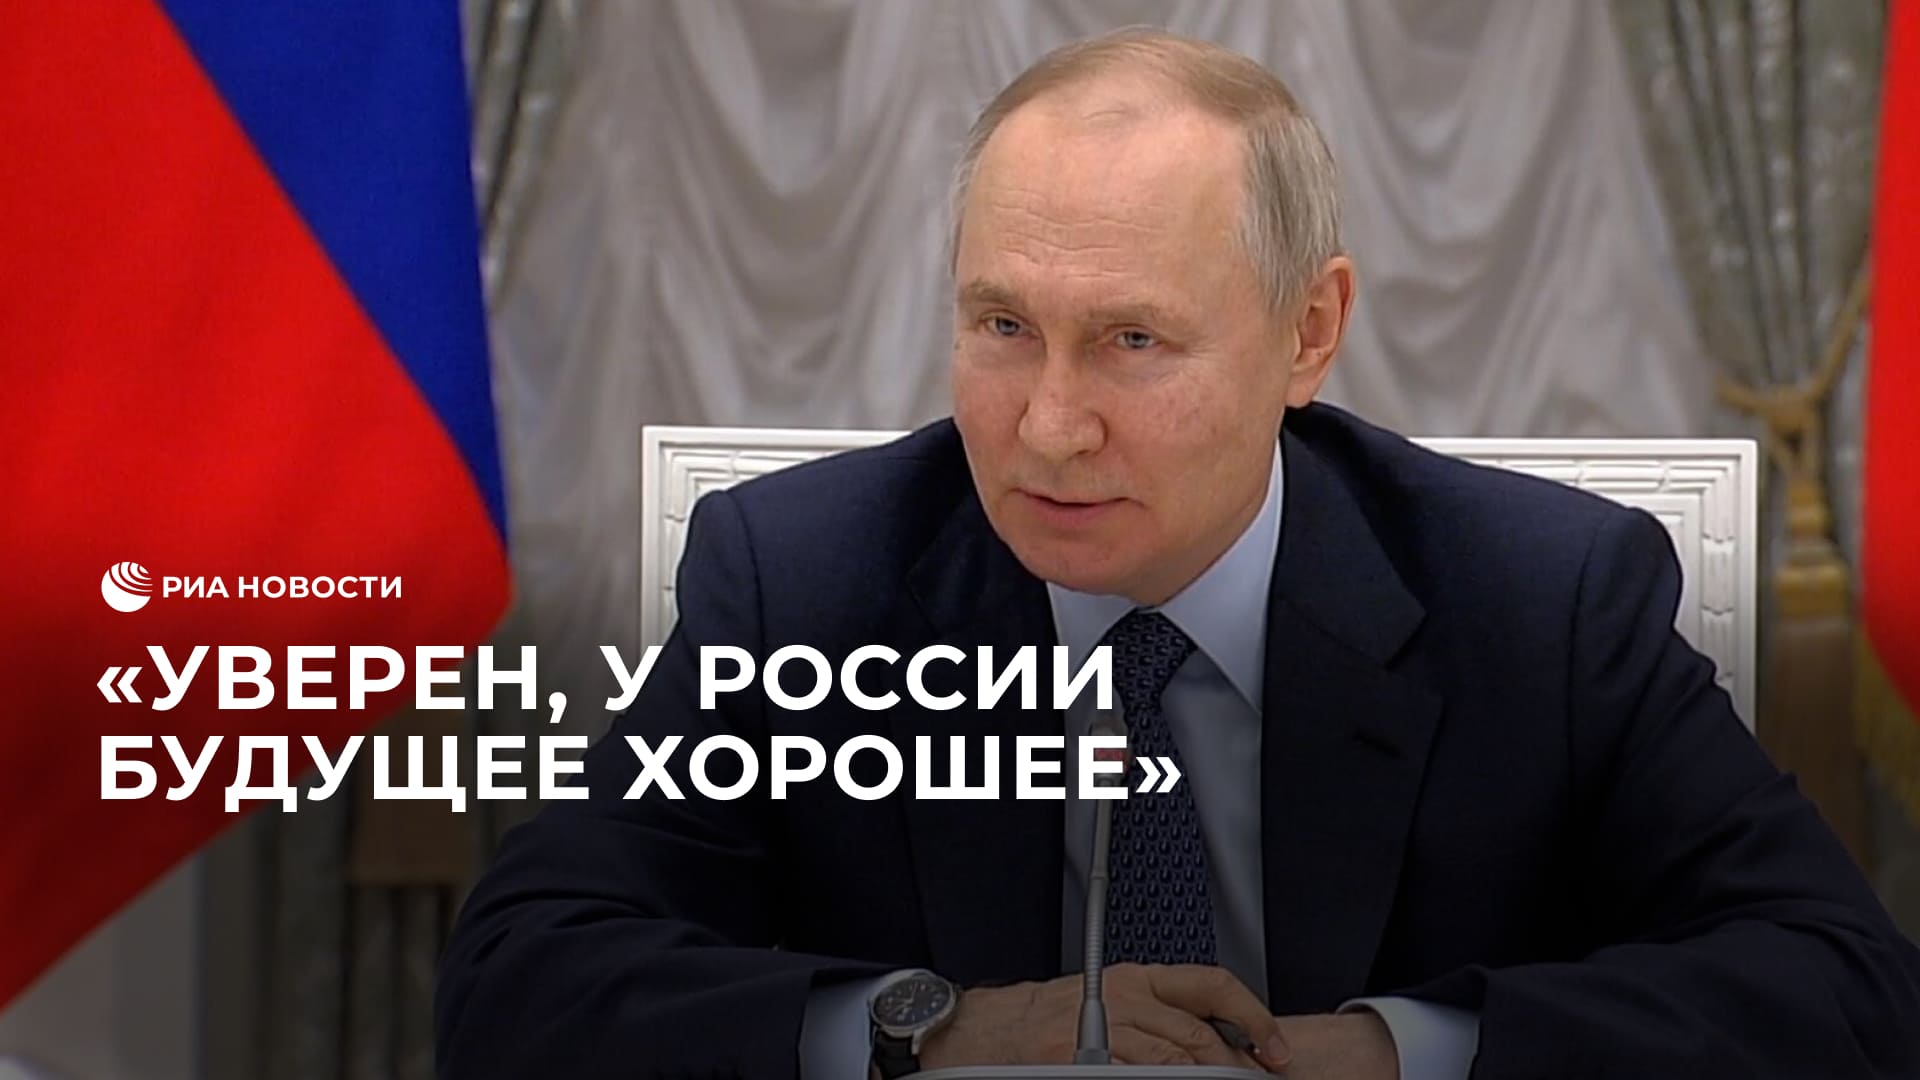 У России хорошее будущее, уверен Путин